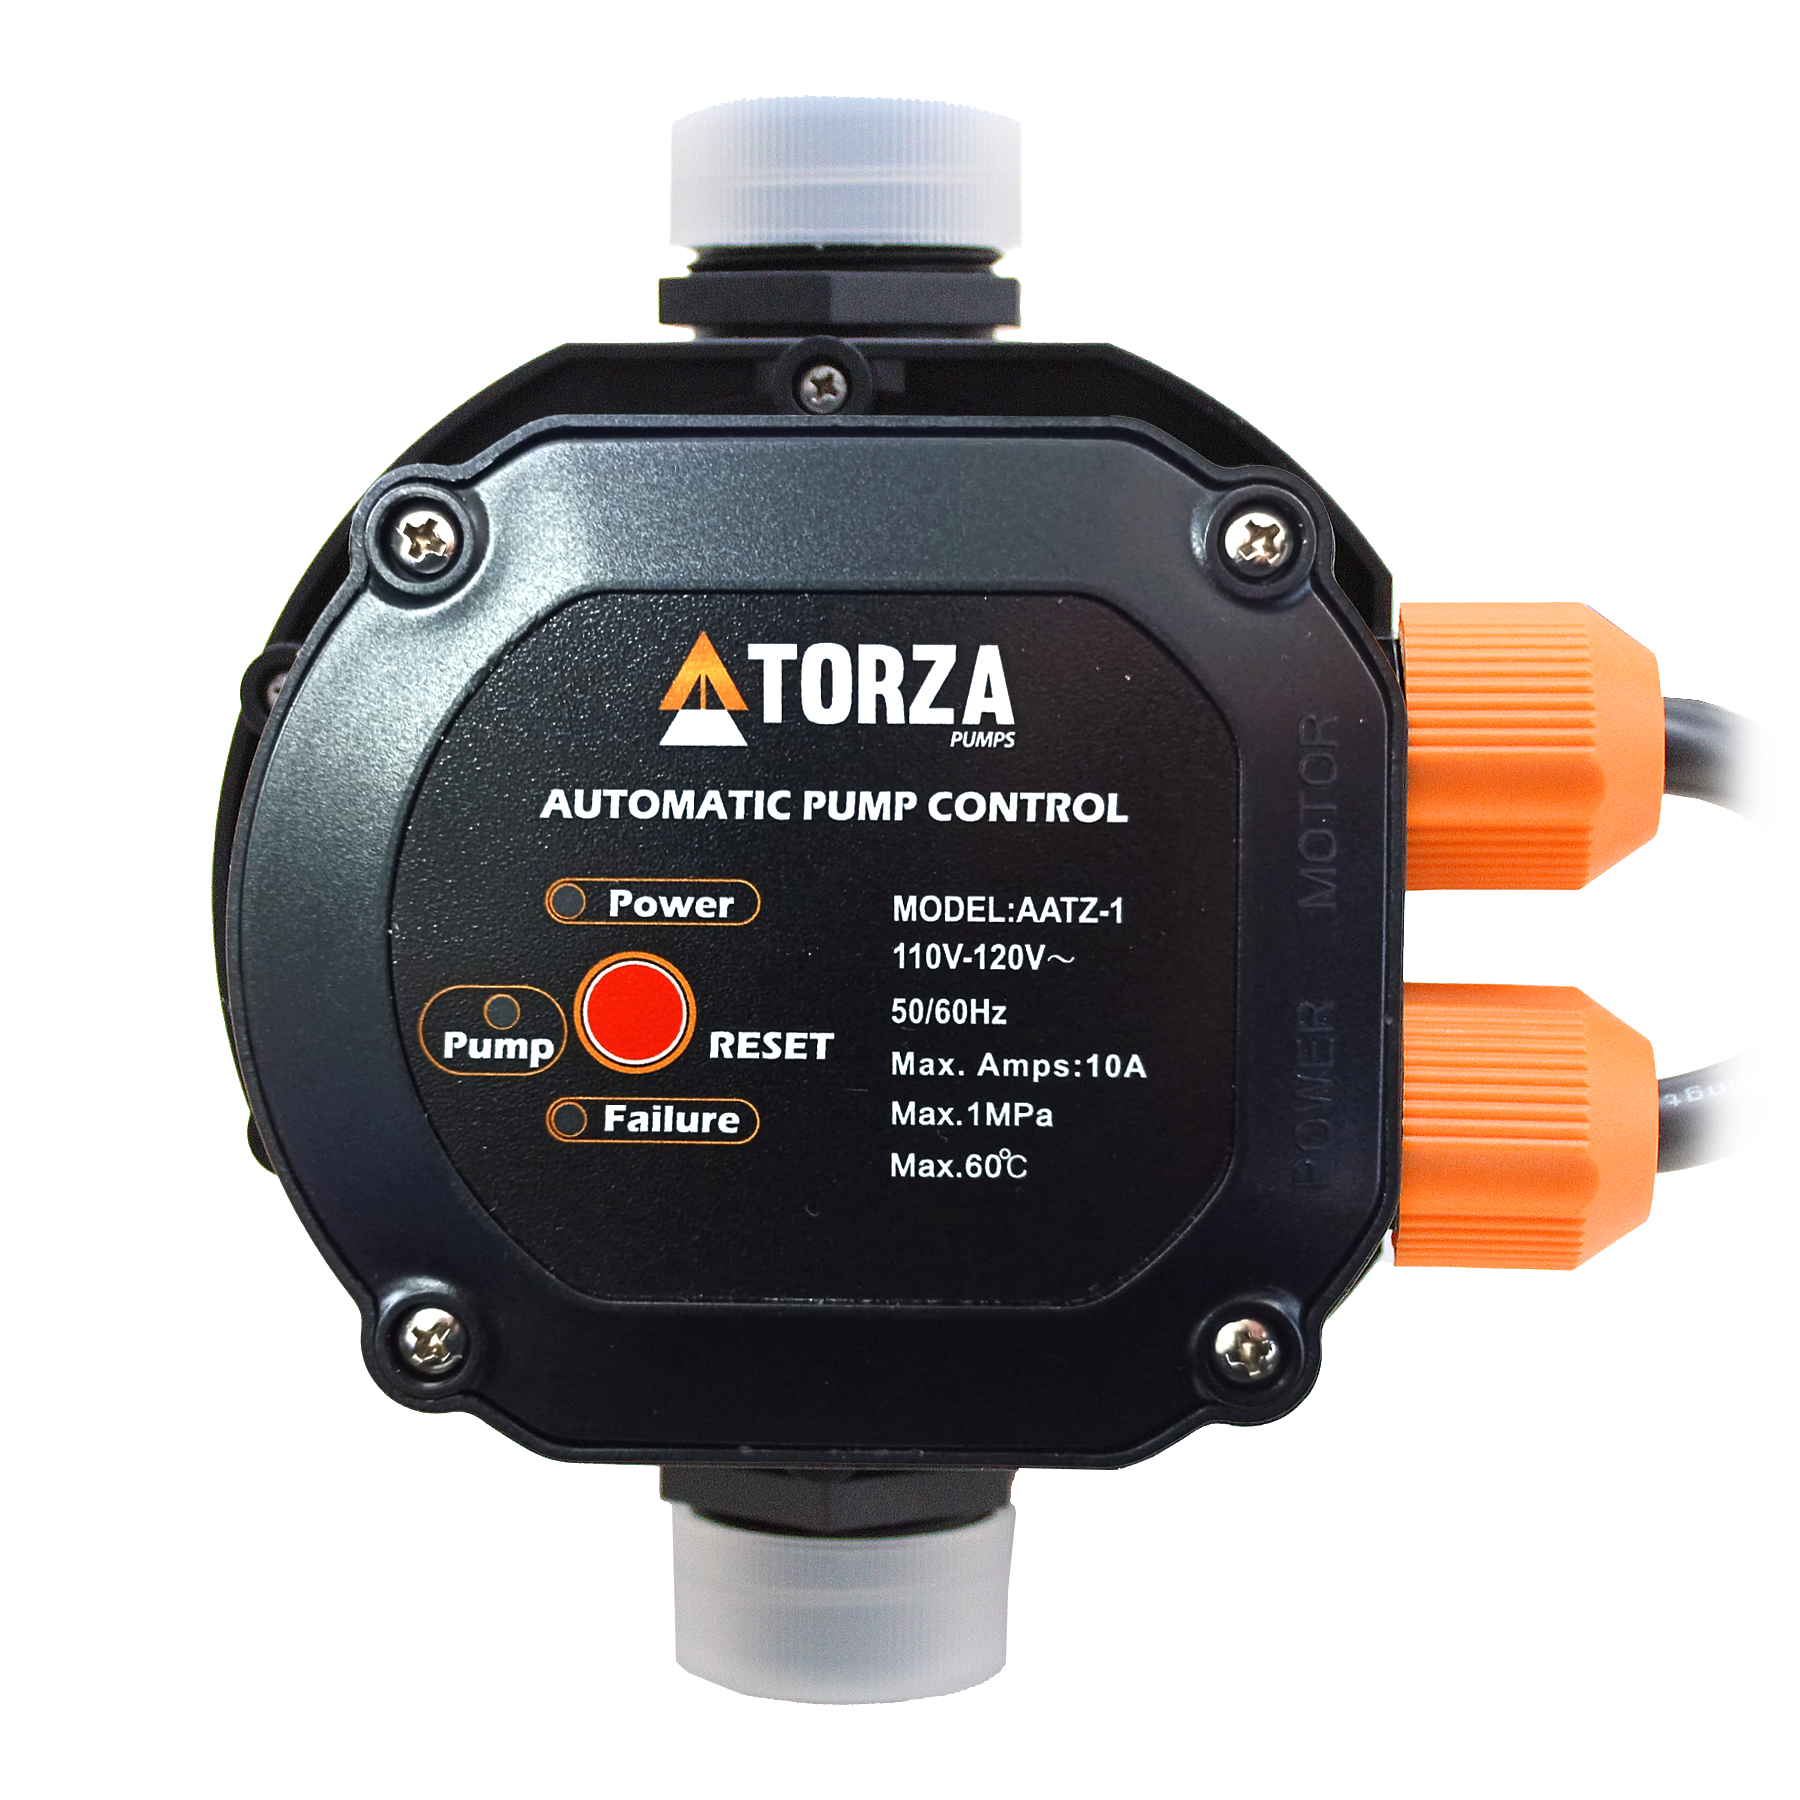 Arrancador Presurizador - Interruptor Electrónico de Presión - Encendido y Apagado Automático - 110V - 20A - TORZA